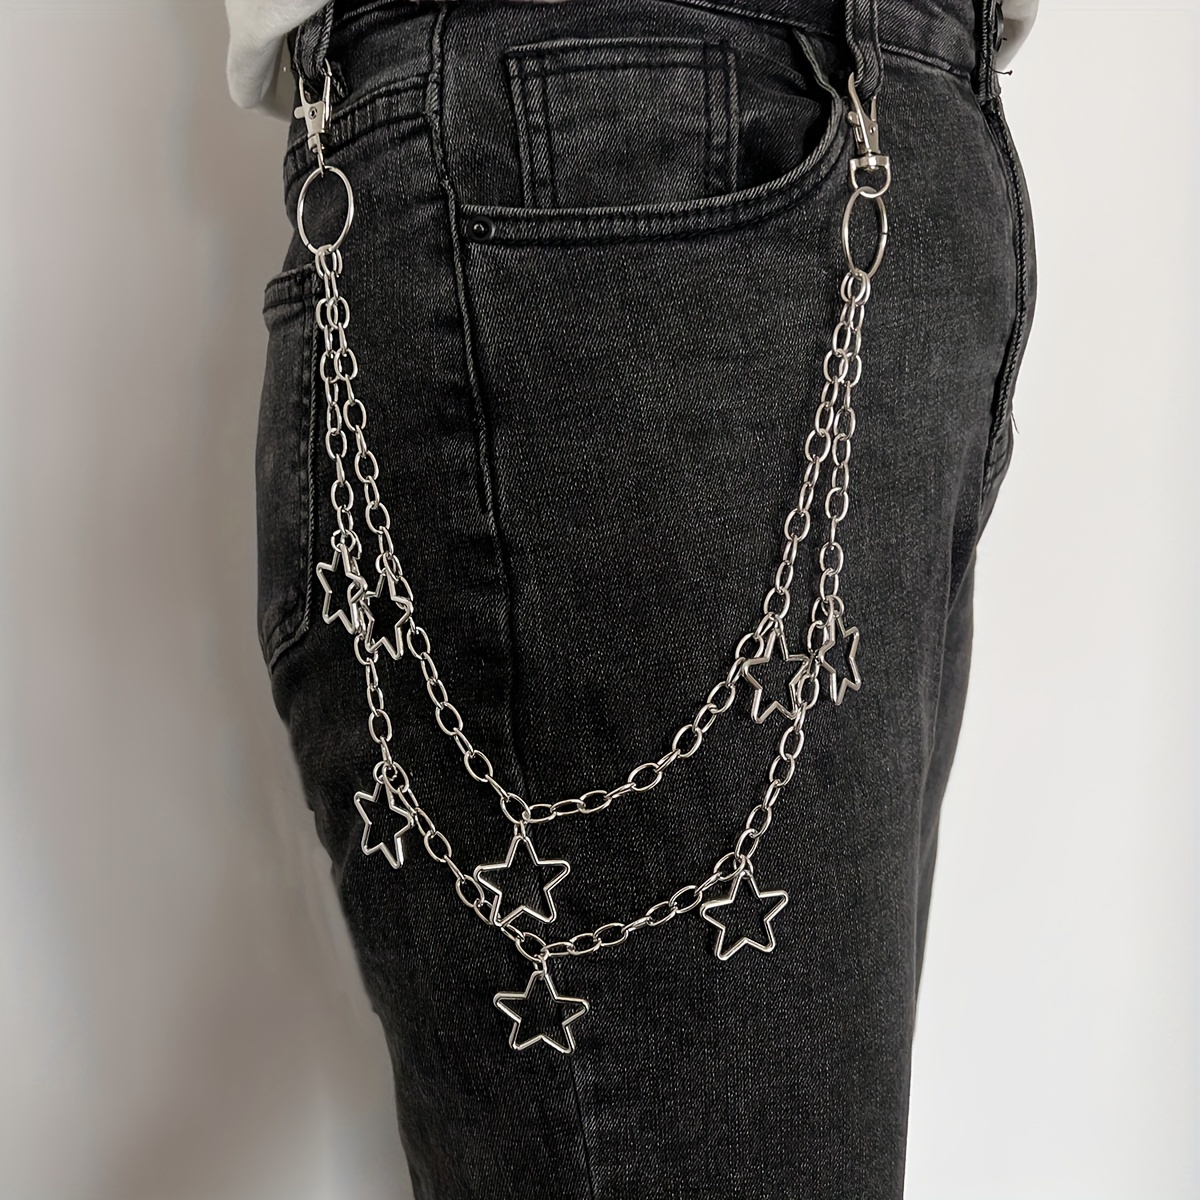 Sliver Gray Star Print 1pc Jeans, Men's Double Layer Waist Chain Decorative Pant, Trousers Chain Trouser Chains Hip Hop Rock Punk Retro Jeans Belt